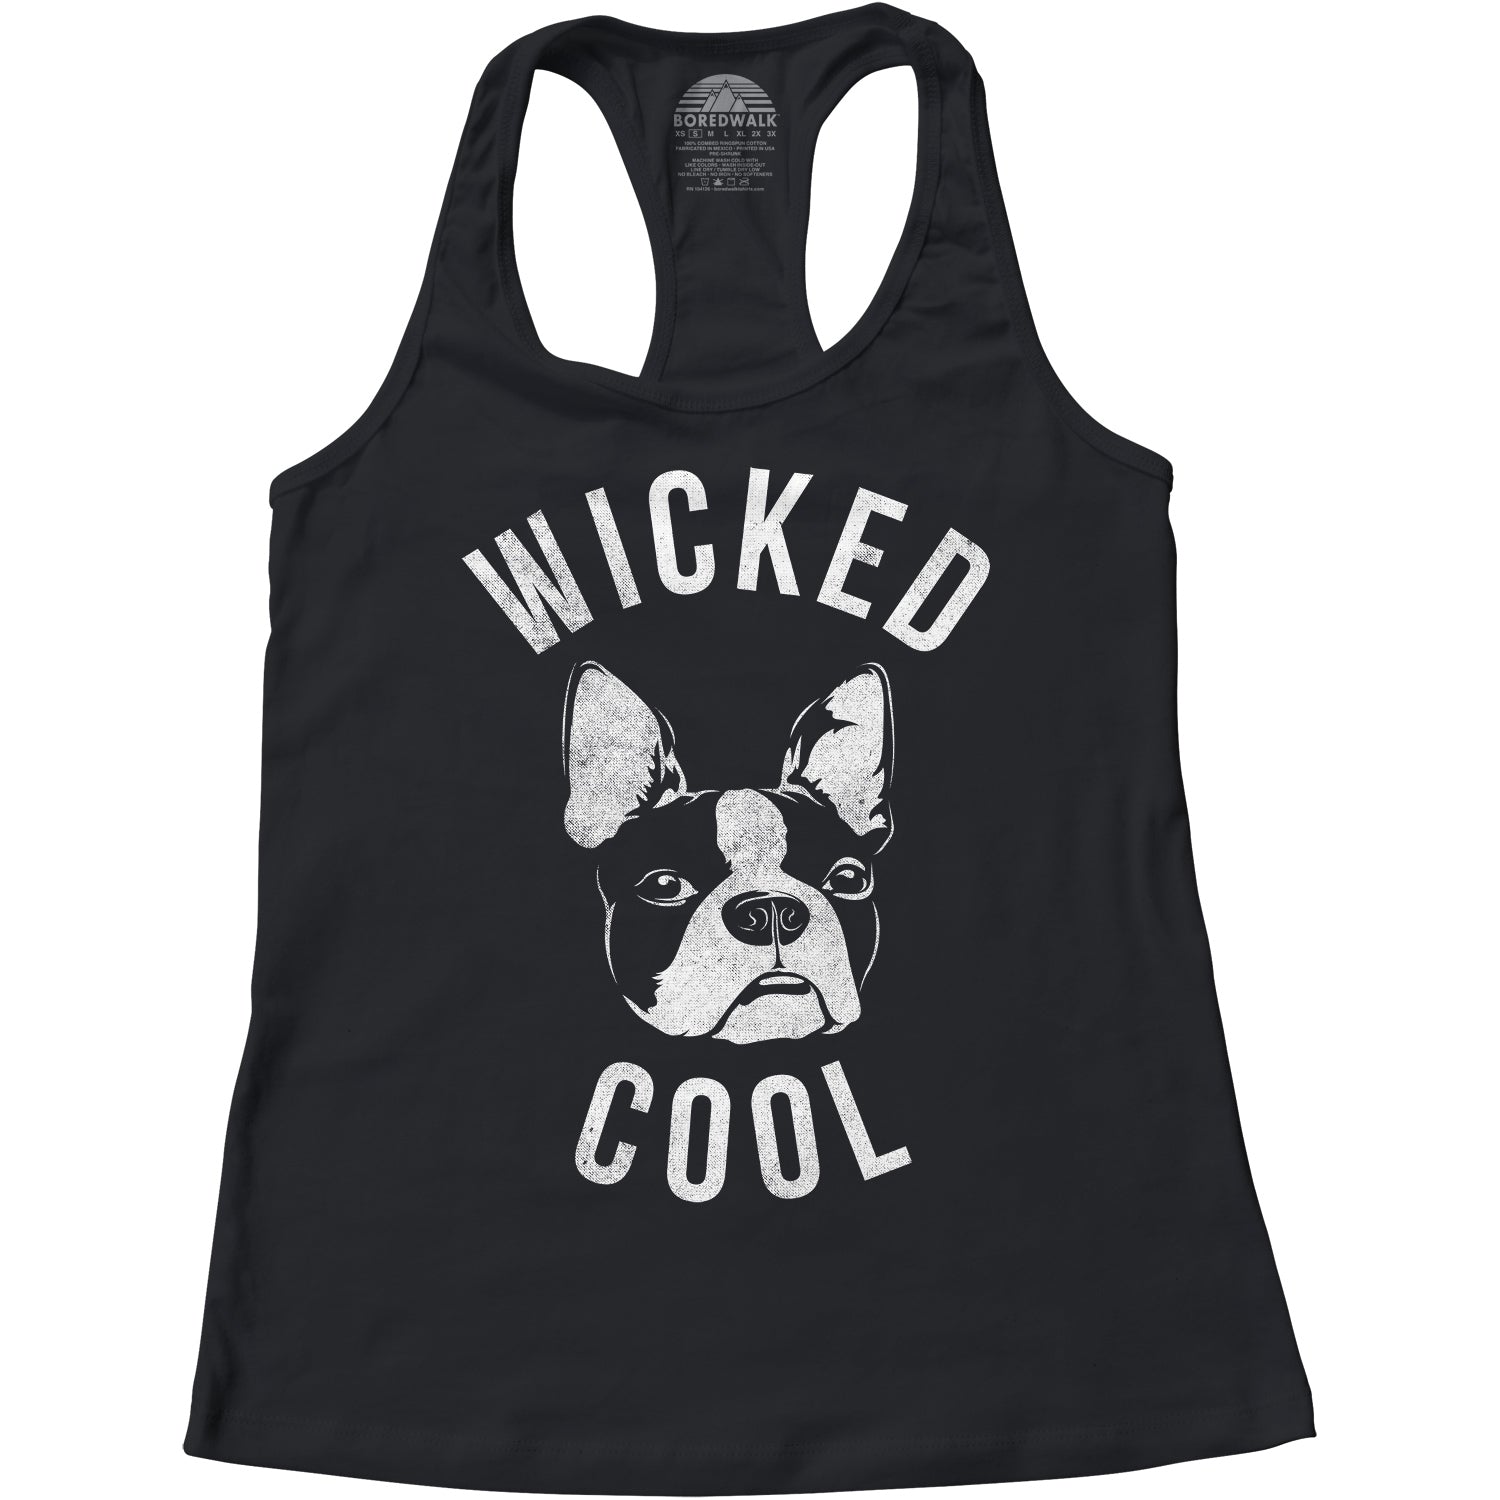 Women's Wicked Cool Boston Terrier Racerback Tank Top